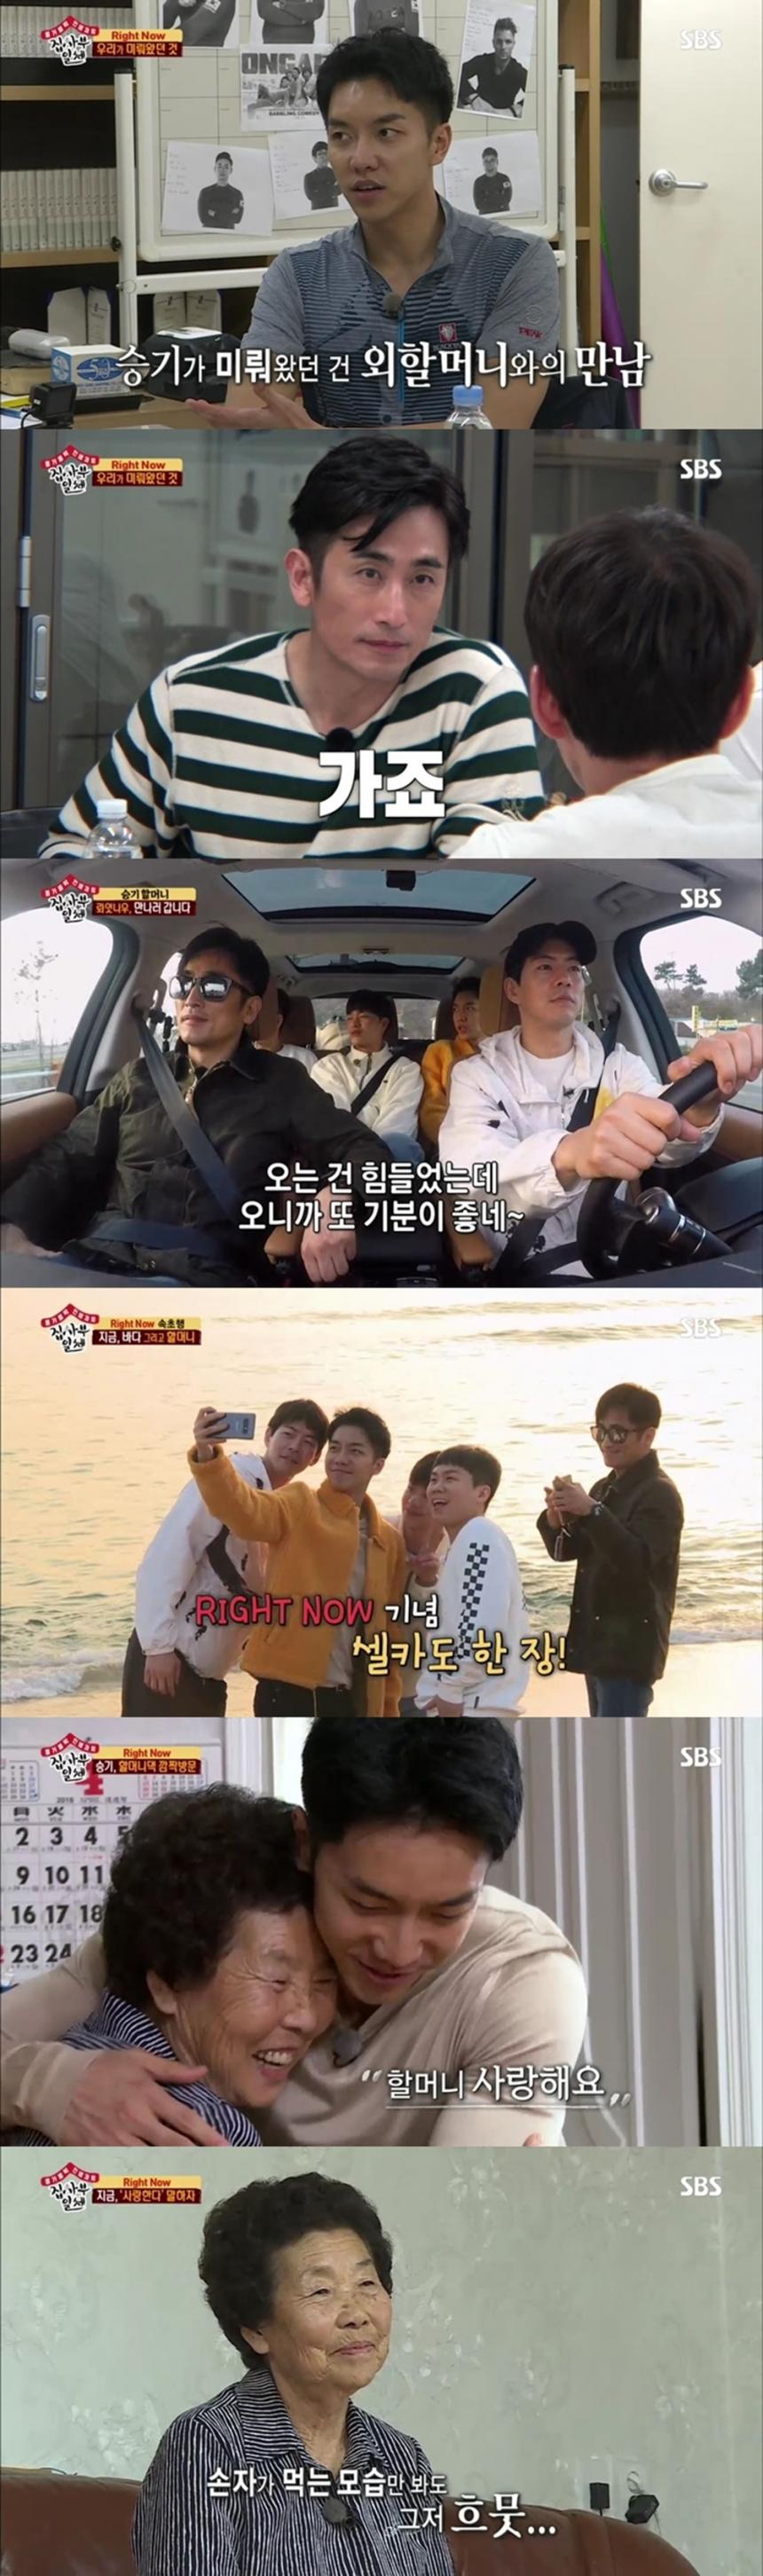 이승기 / SBS ‘집사부일체’ 방송 캡처